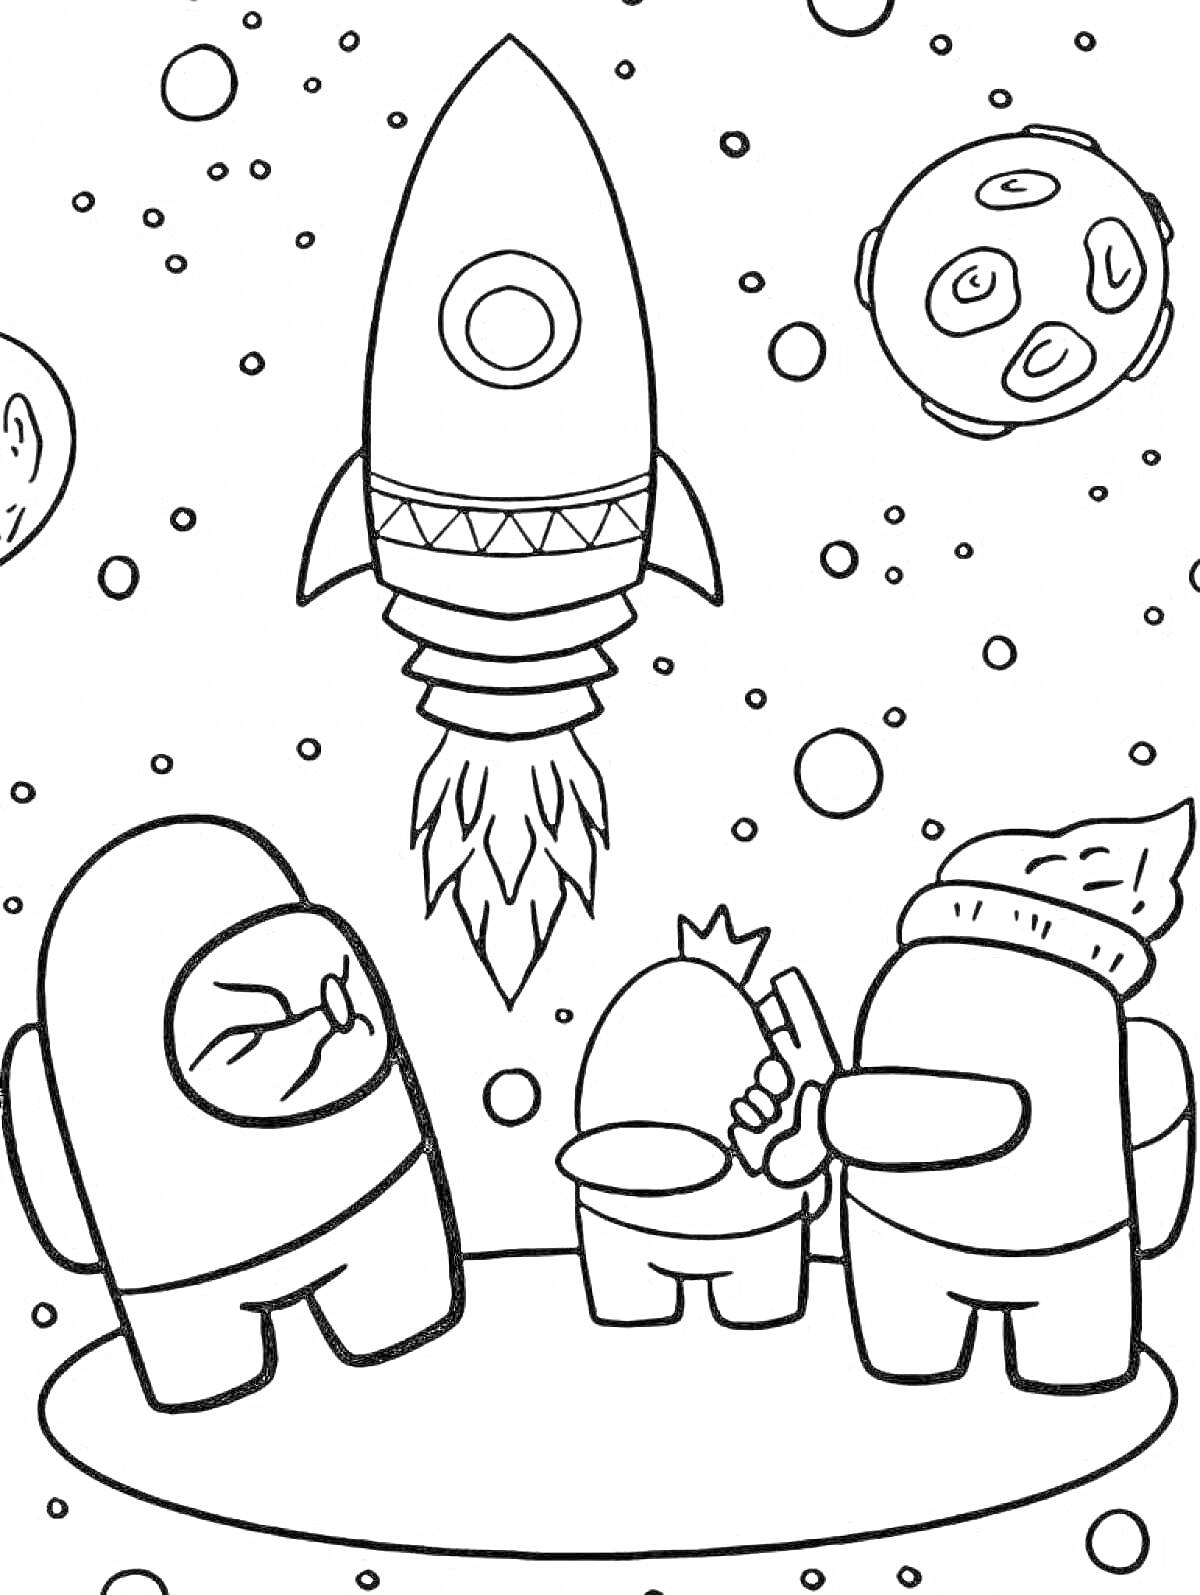 Раскраска Персонажи Among Us с оружием и тортиком на удлиненном космическом покрове, взлетающая ракета и астероиды на заднем плане